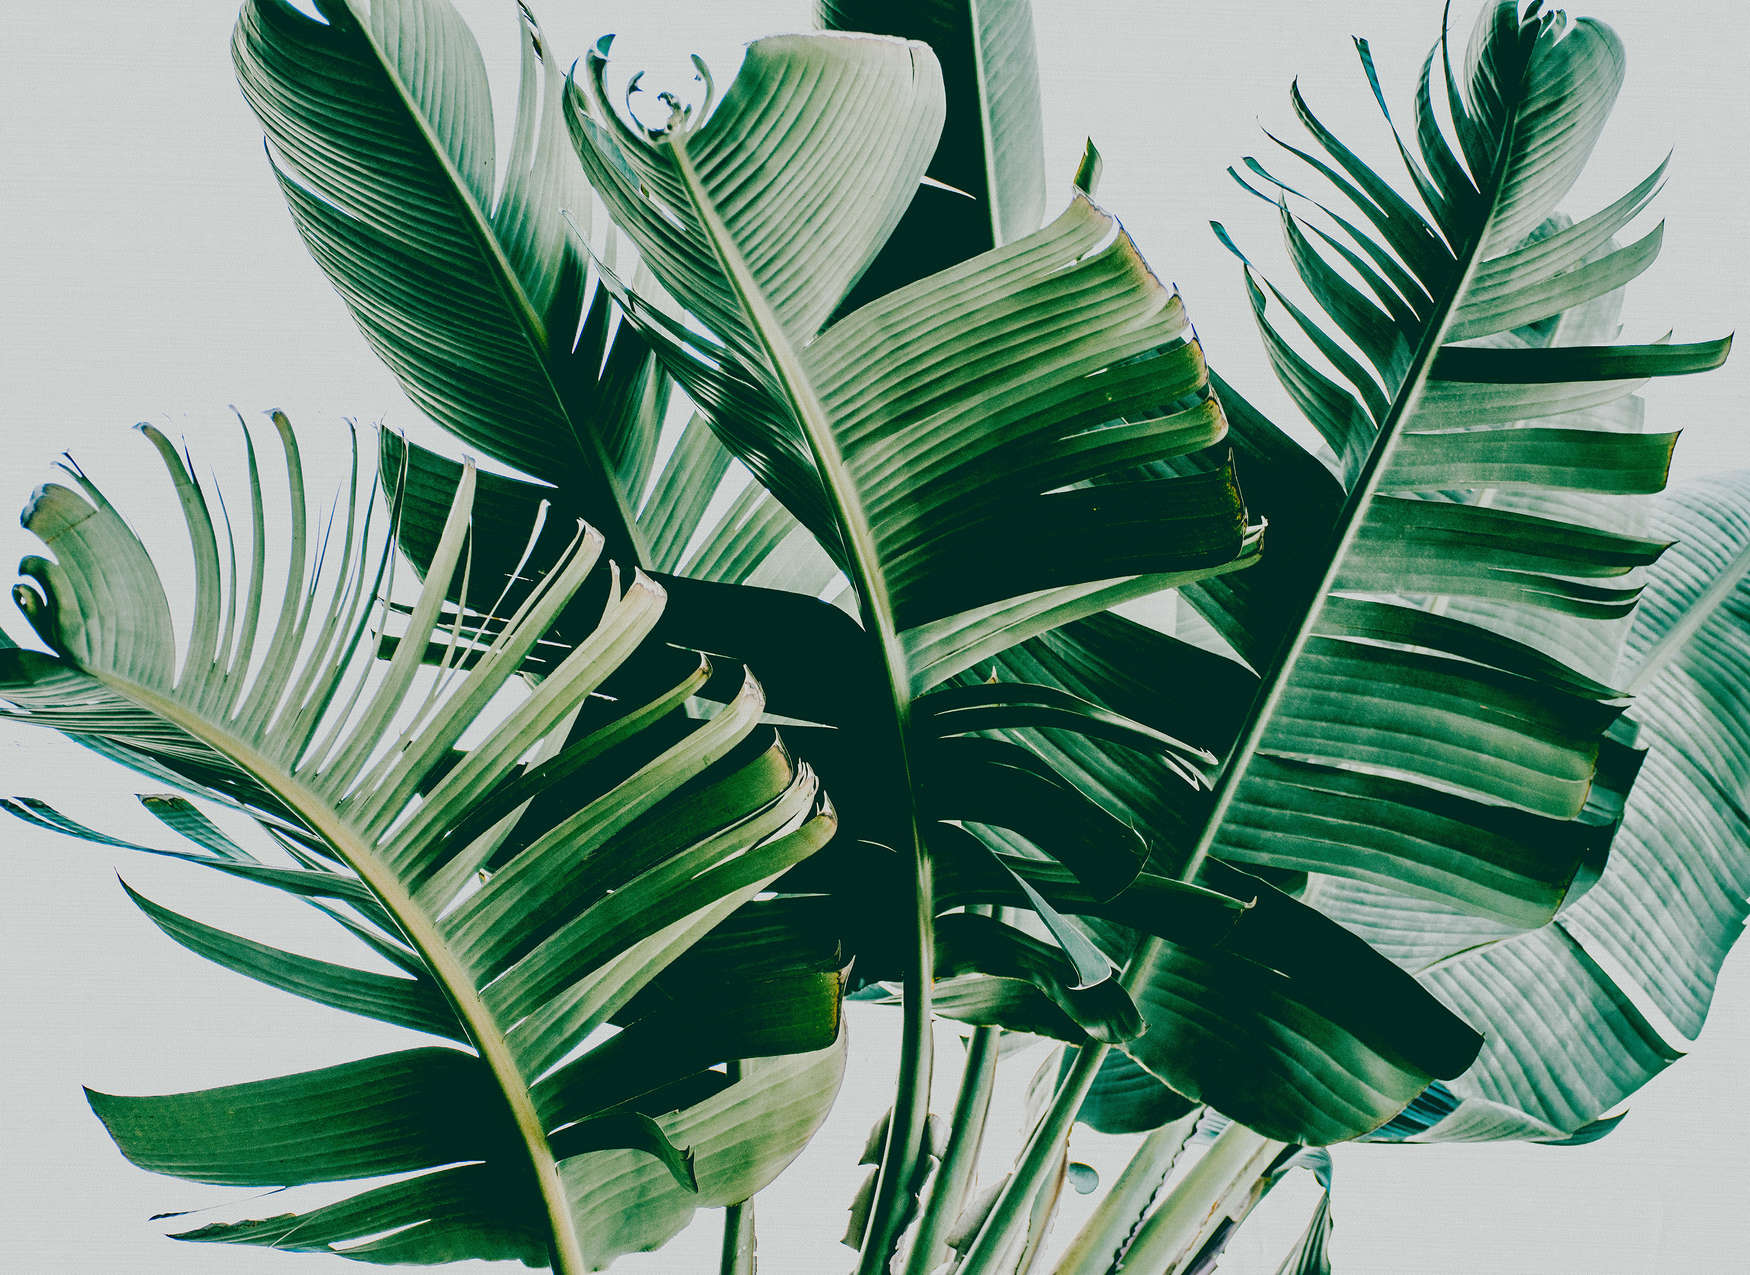             Fotomurali con motivo naturale di foglie di palma - Verde, Grigio
        